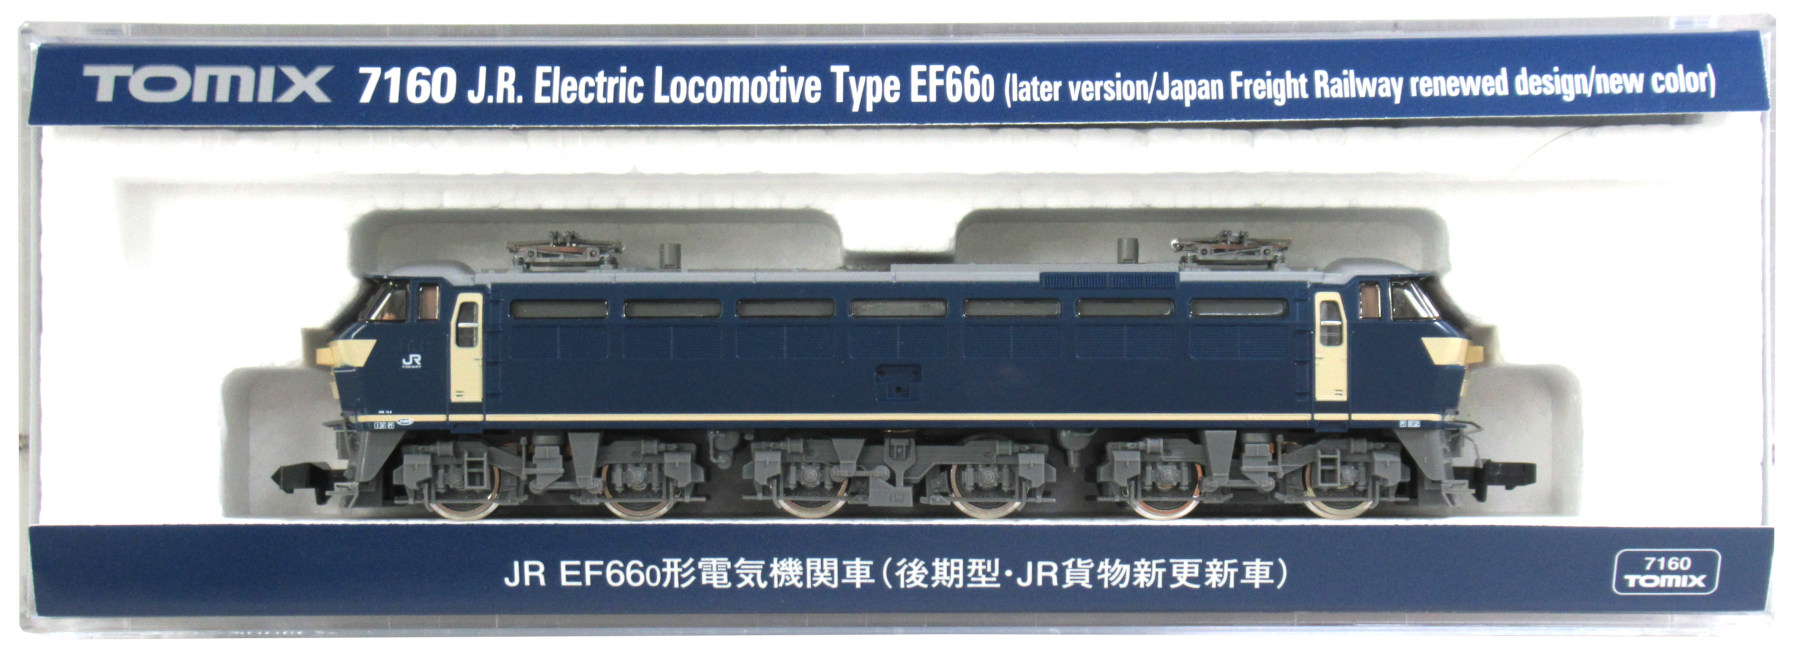 7160EF66-0形後期JR貨物新更新